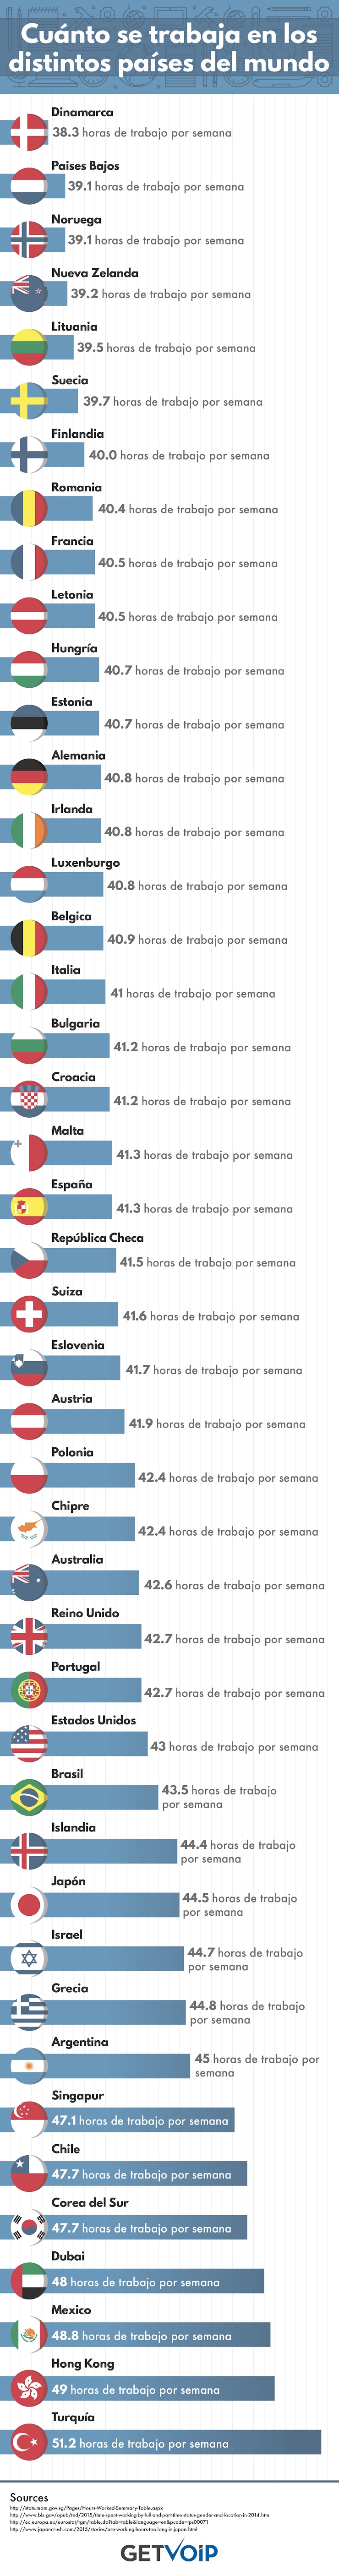 Cuáles son los países en los que se trabajan más horas